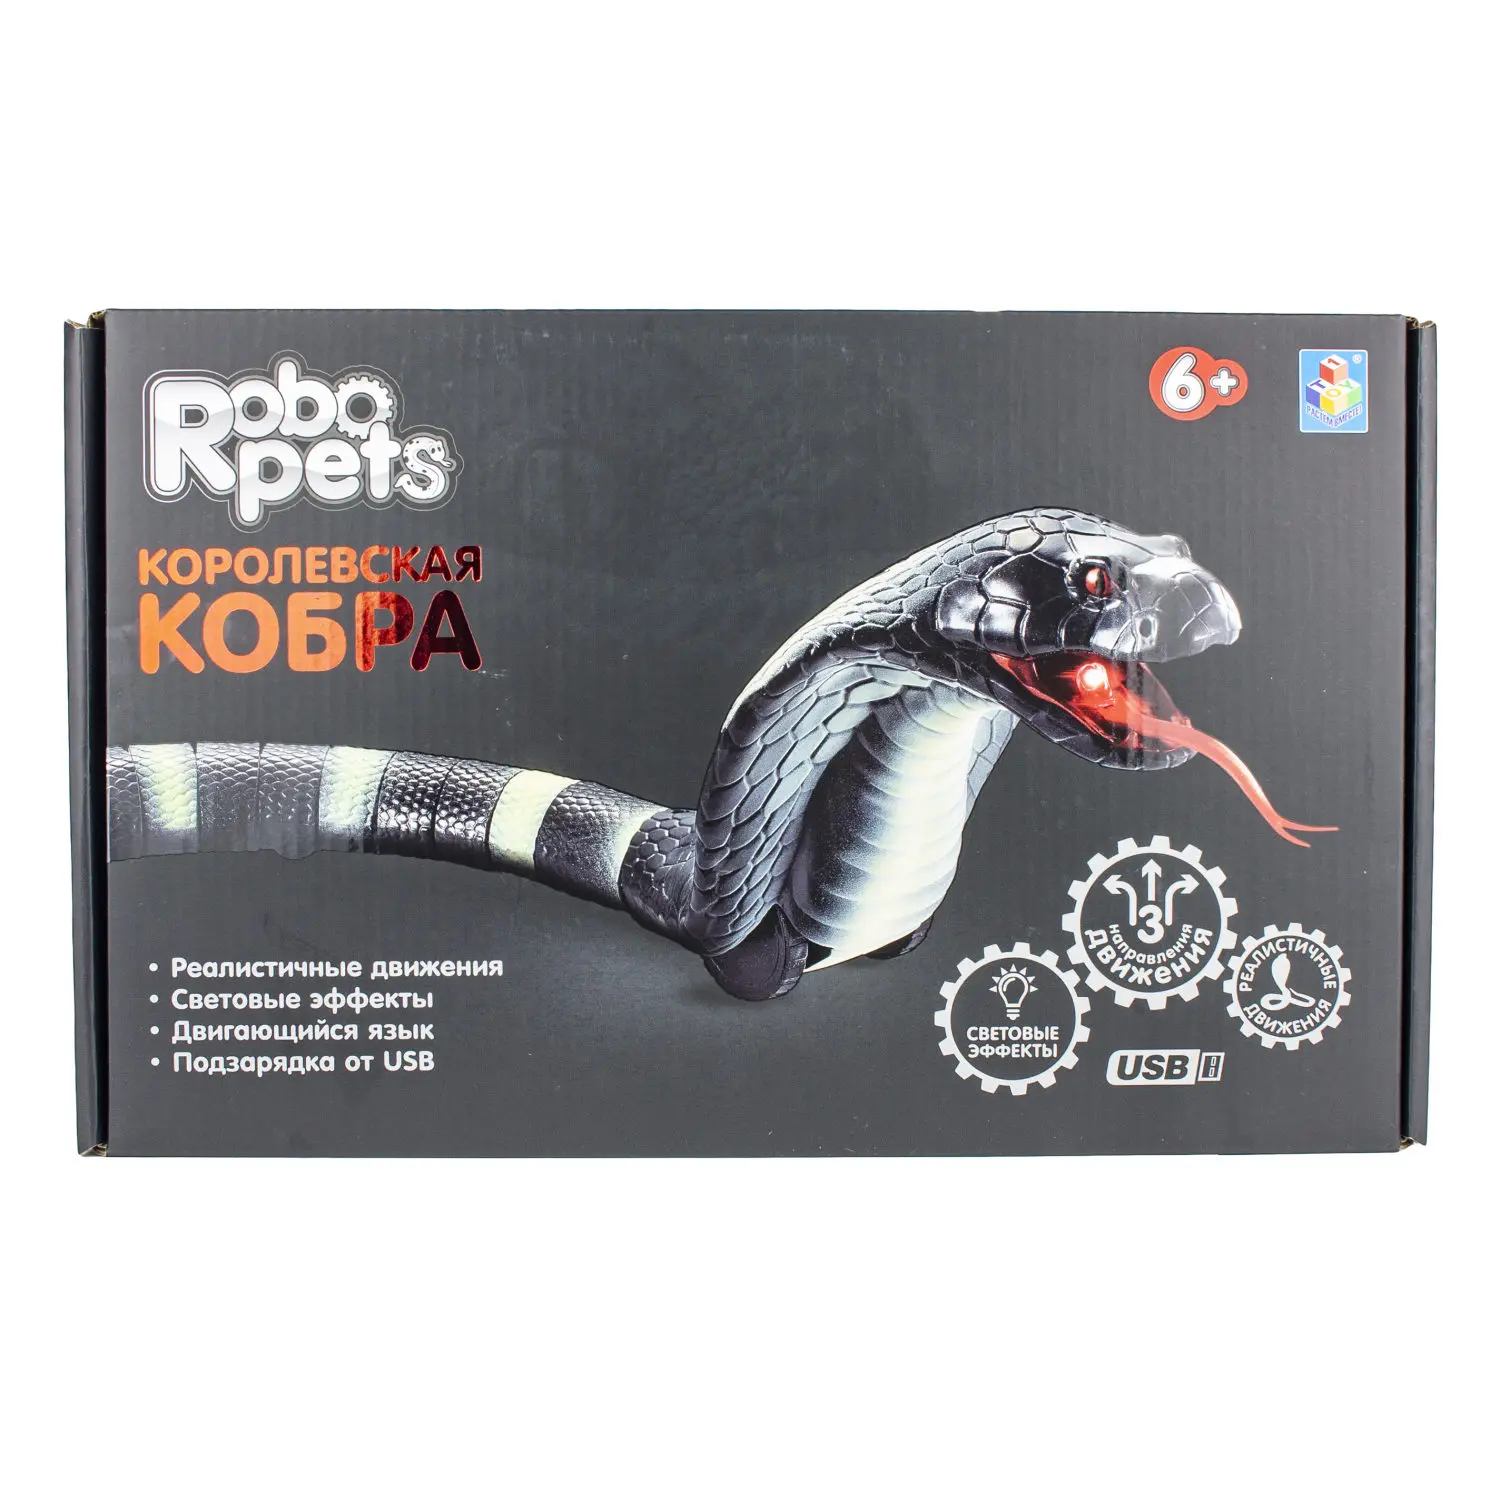 RoboPets Королевская кобра  - фото